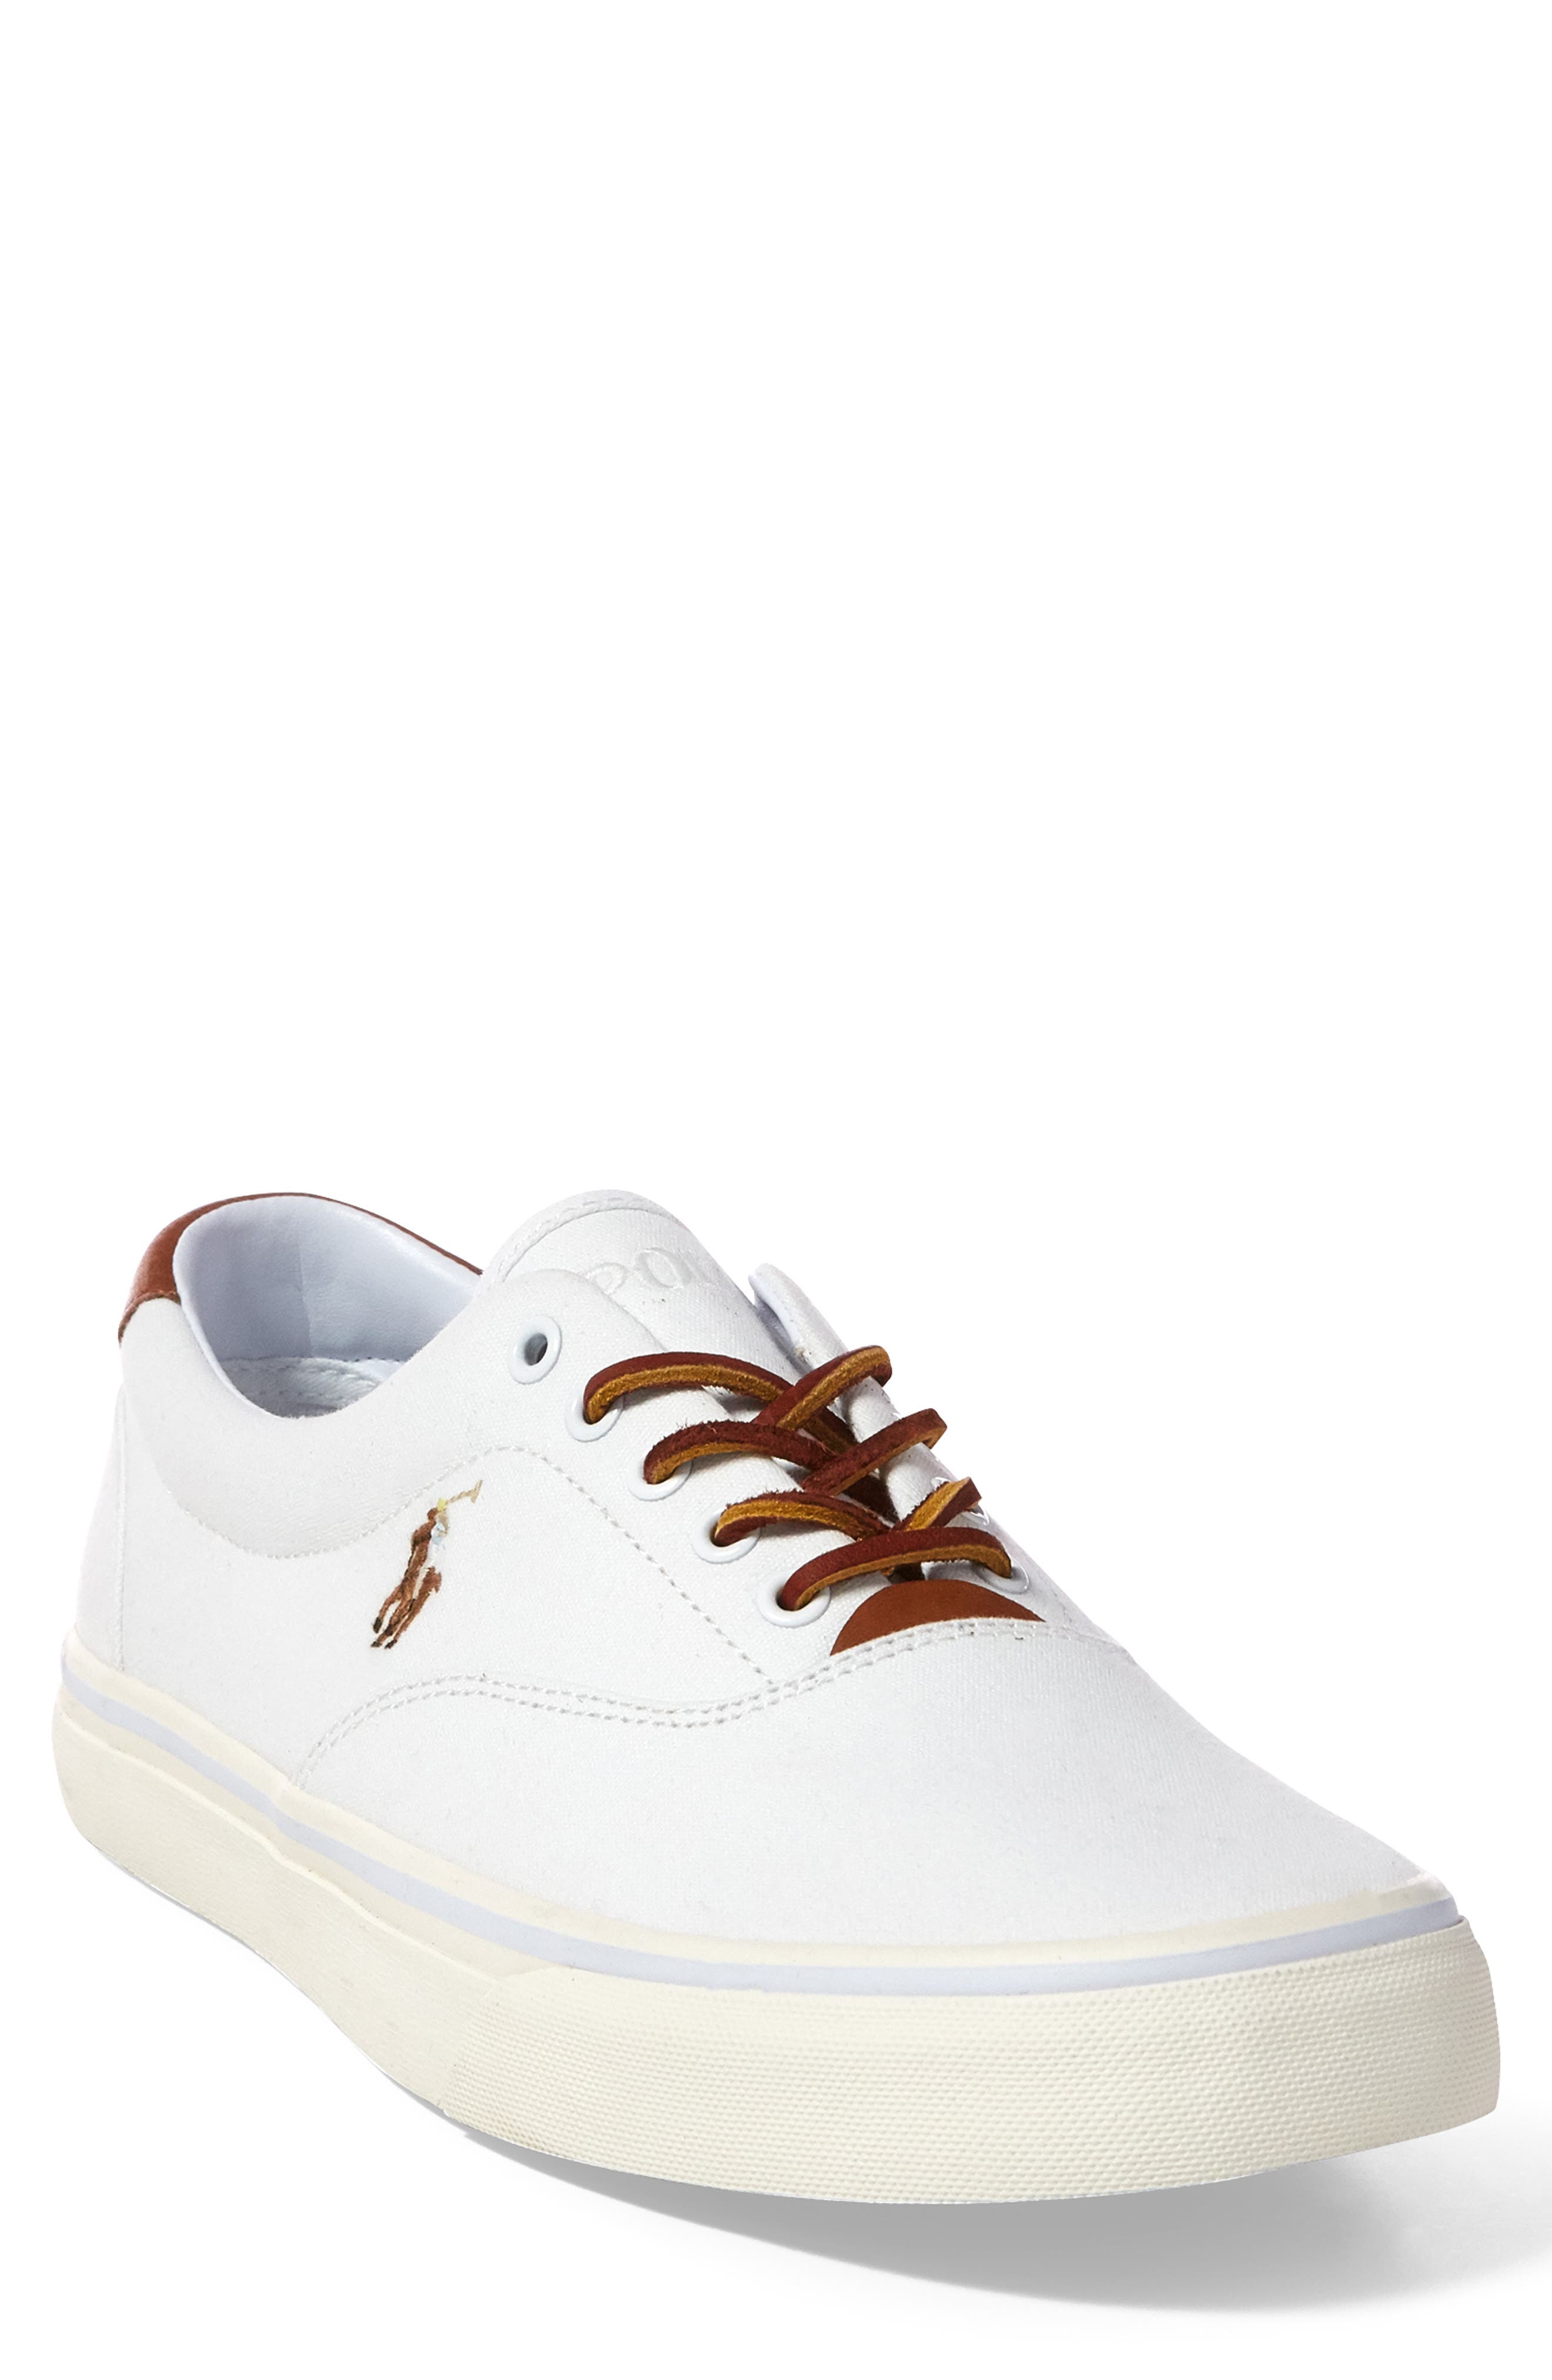 polo ralph lauren white canvas shoes